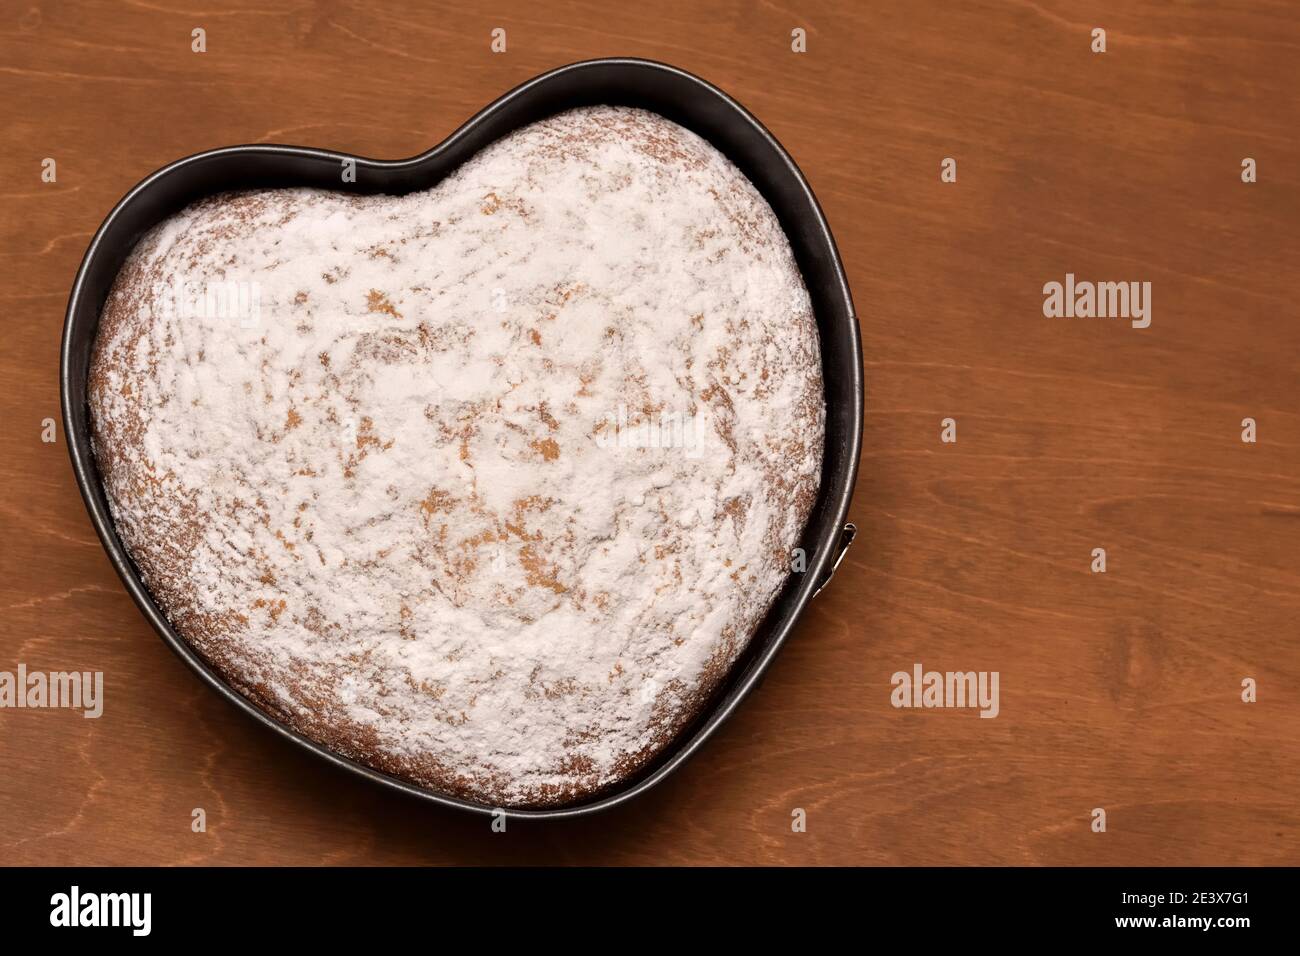 torta a forma di cuore spolverata con zucchero in polvere, appena sfornata con amore per il compleanno e la festa Foto Stock